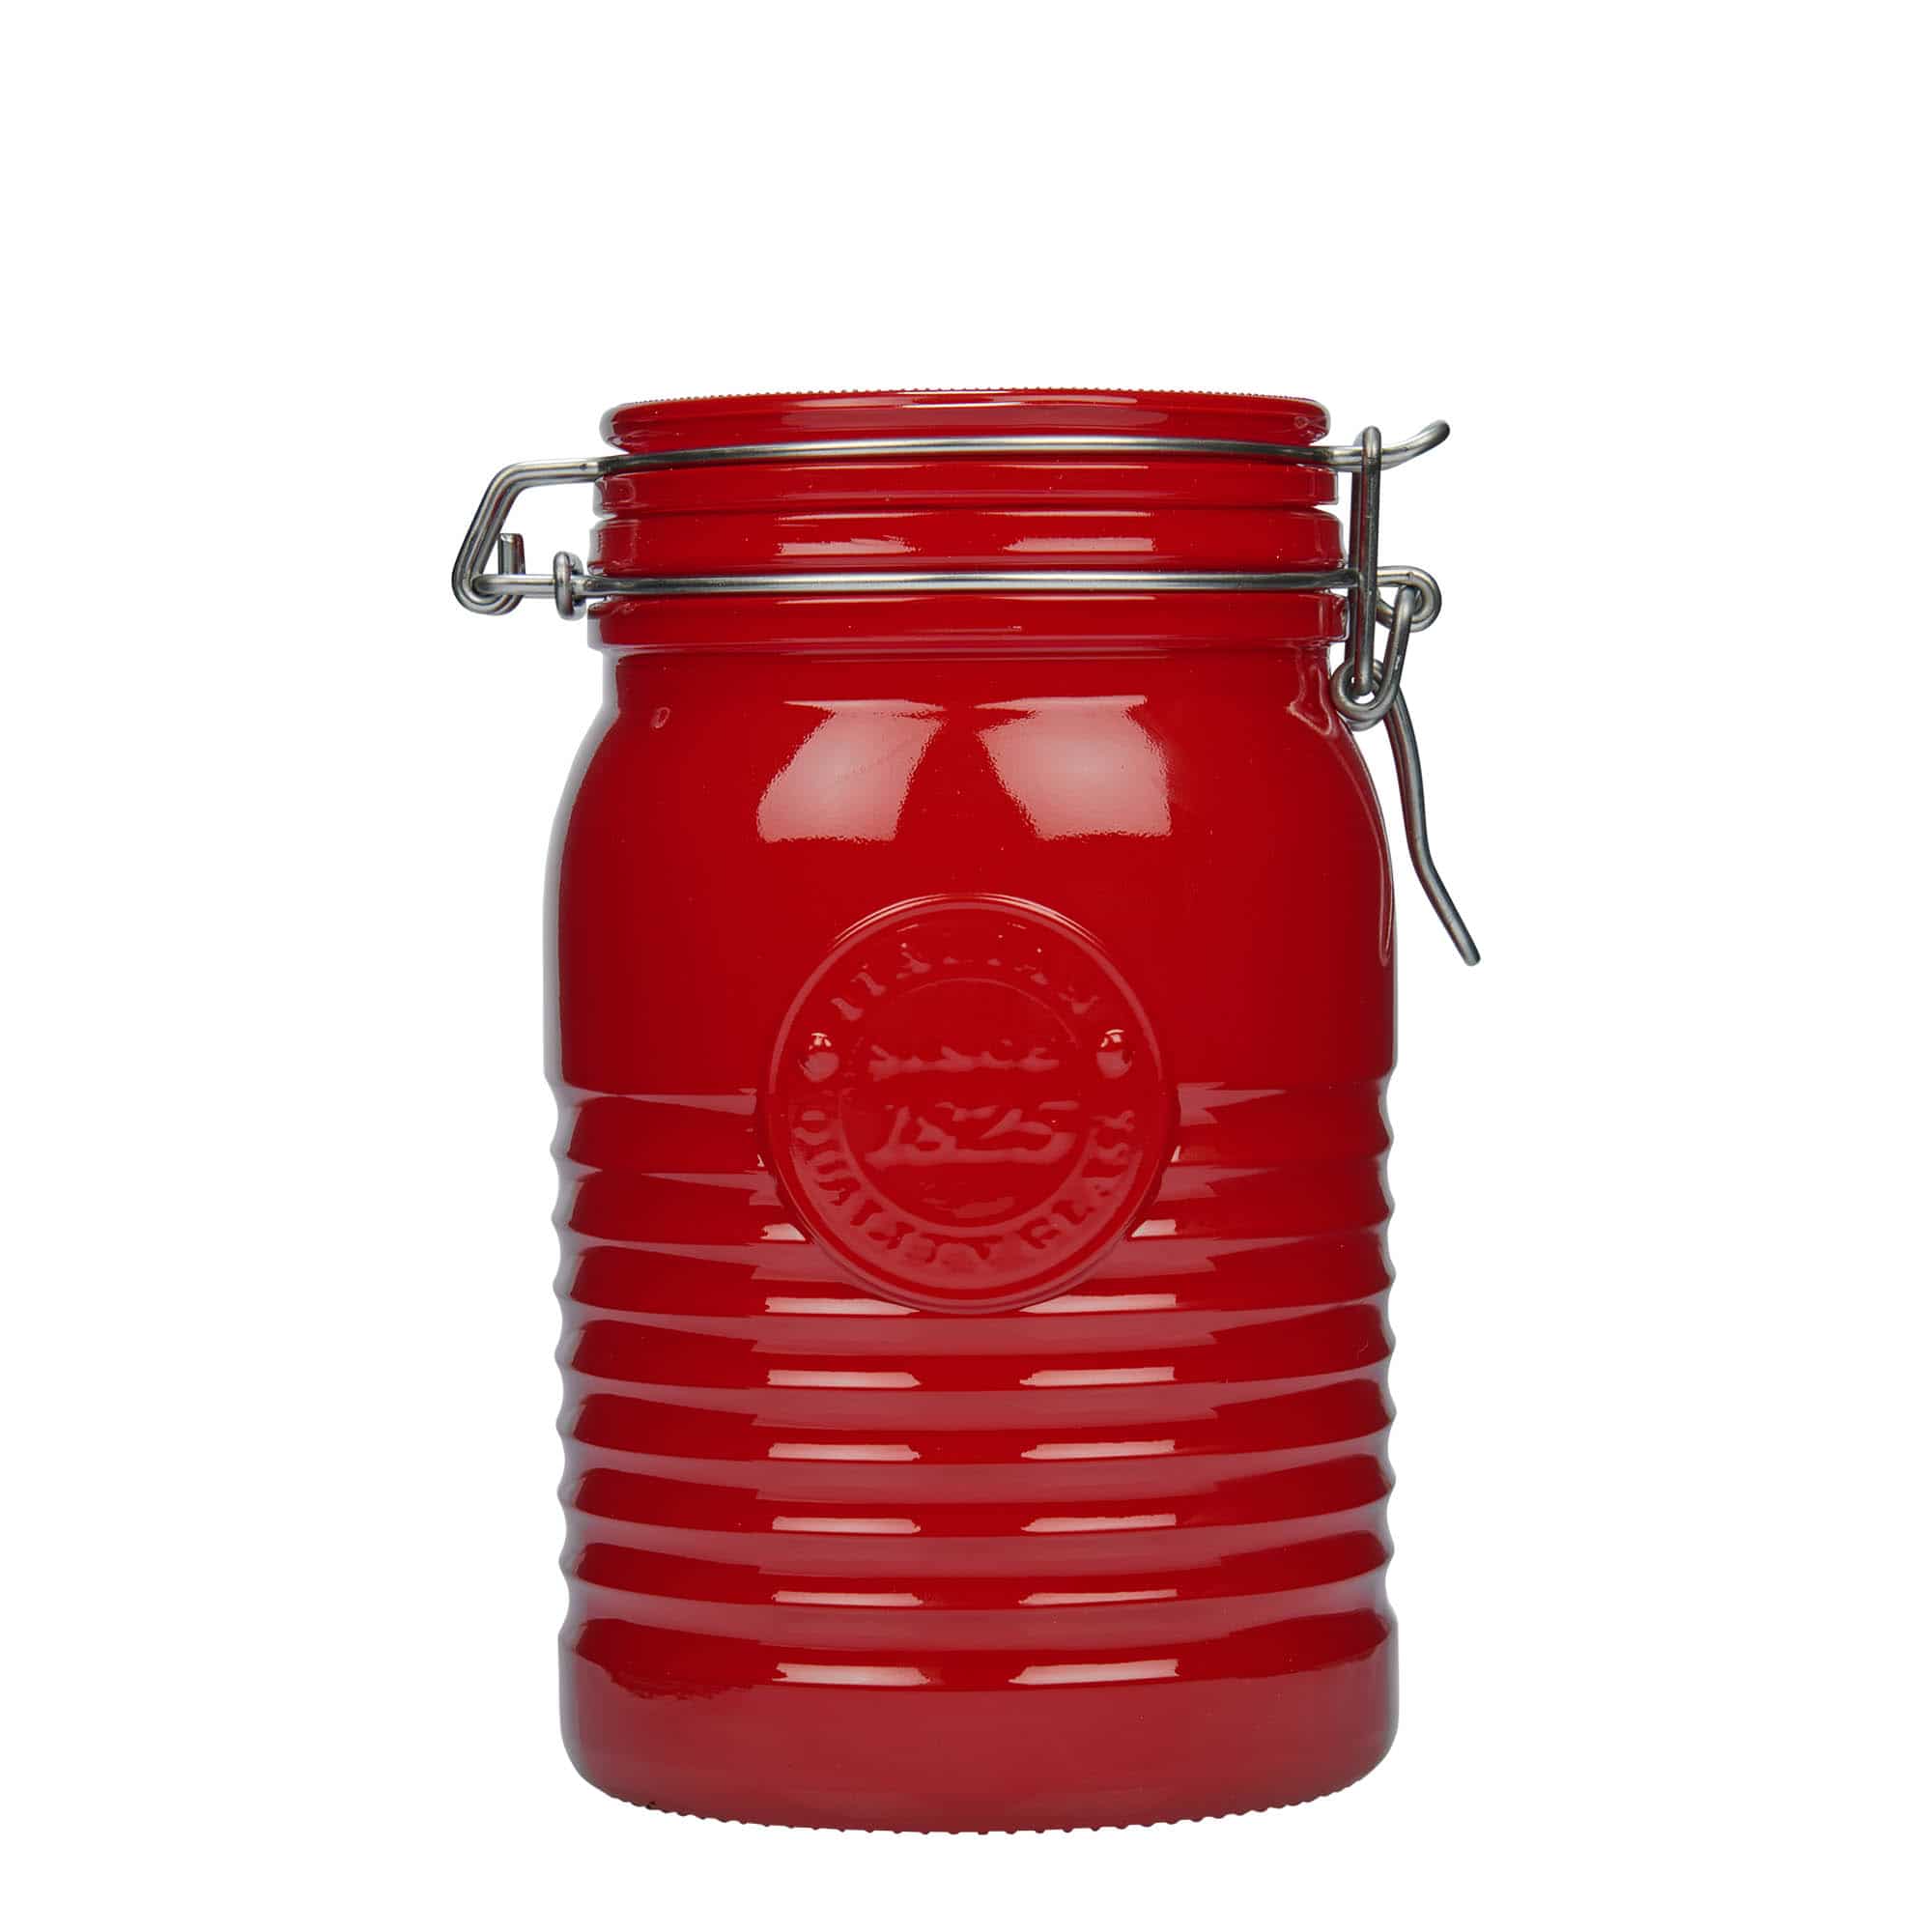 1,000 ml clip top jar 'Officina 1825', red, closure: clip top